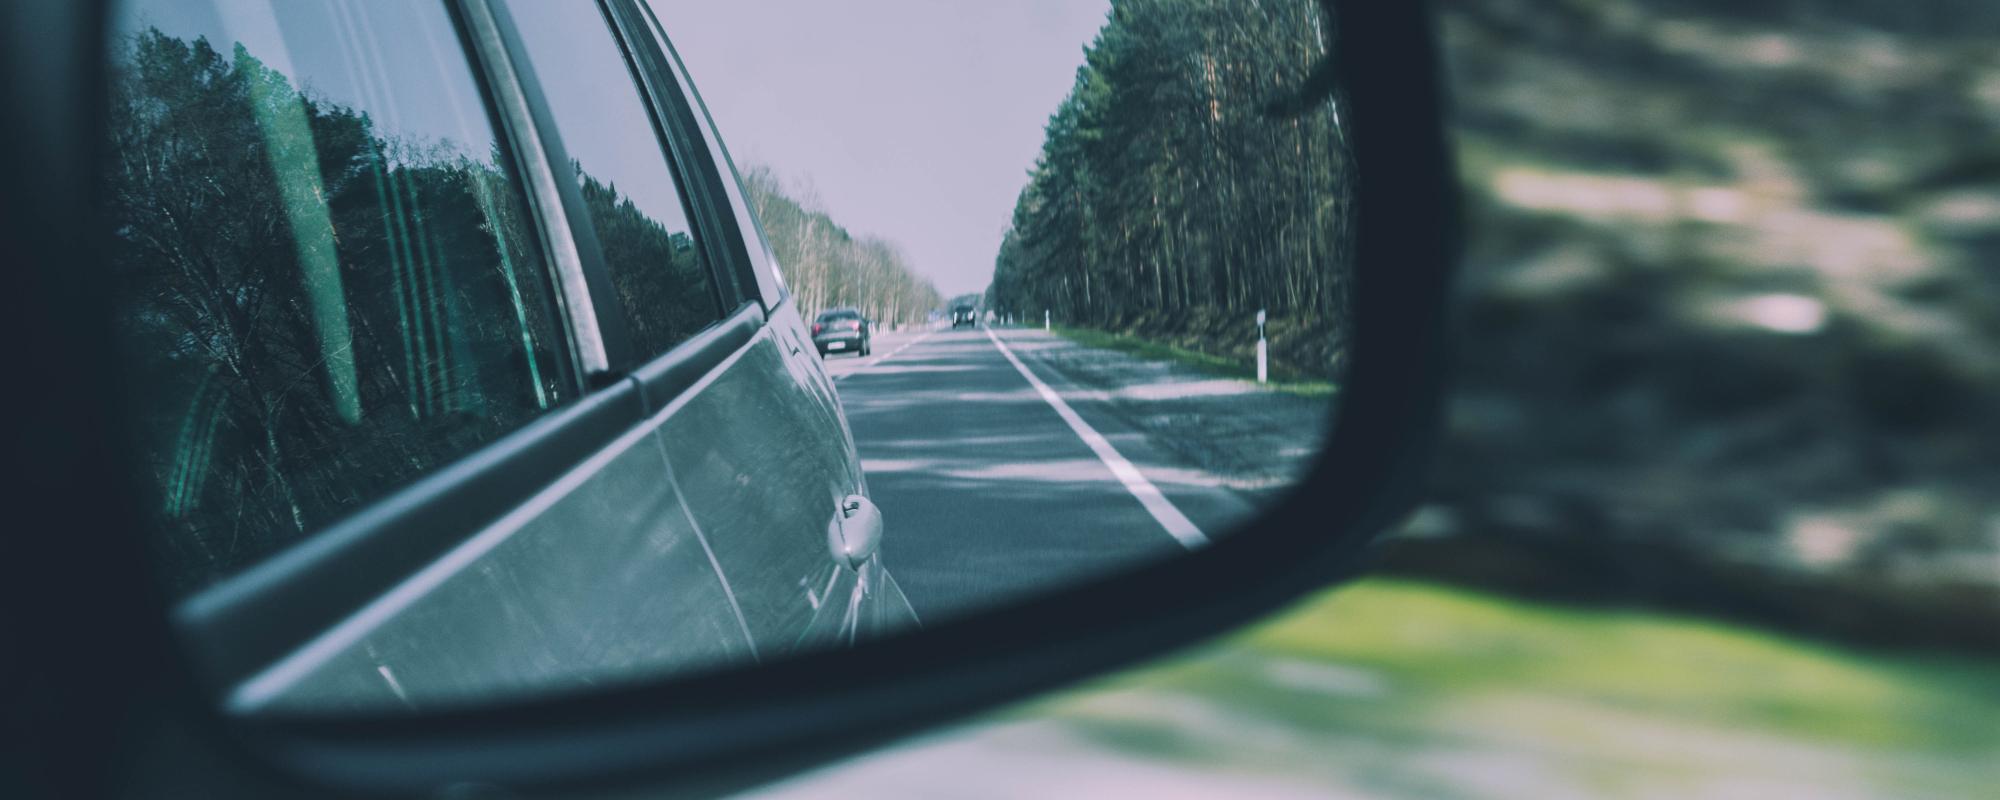 Hero-windscreen-side-mirror-view